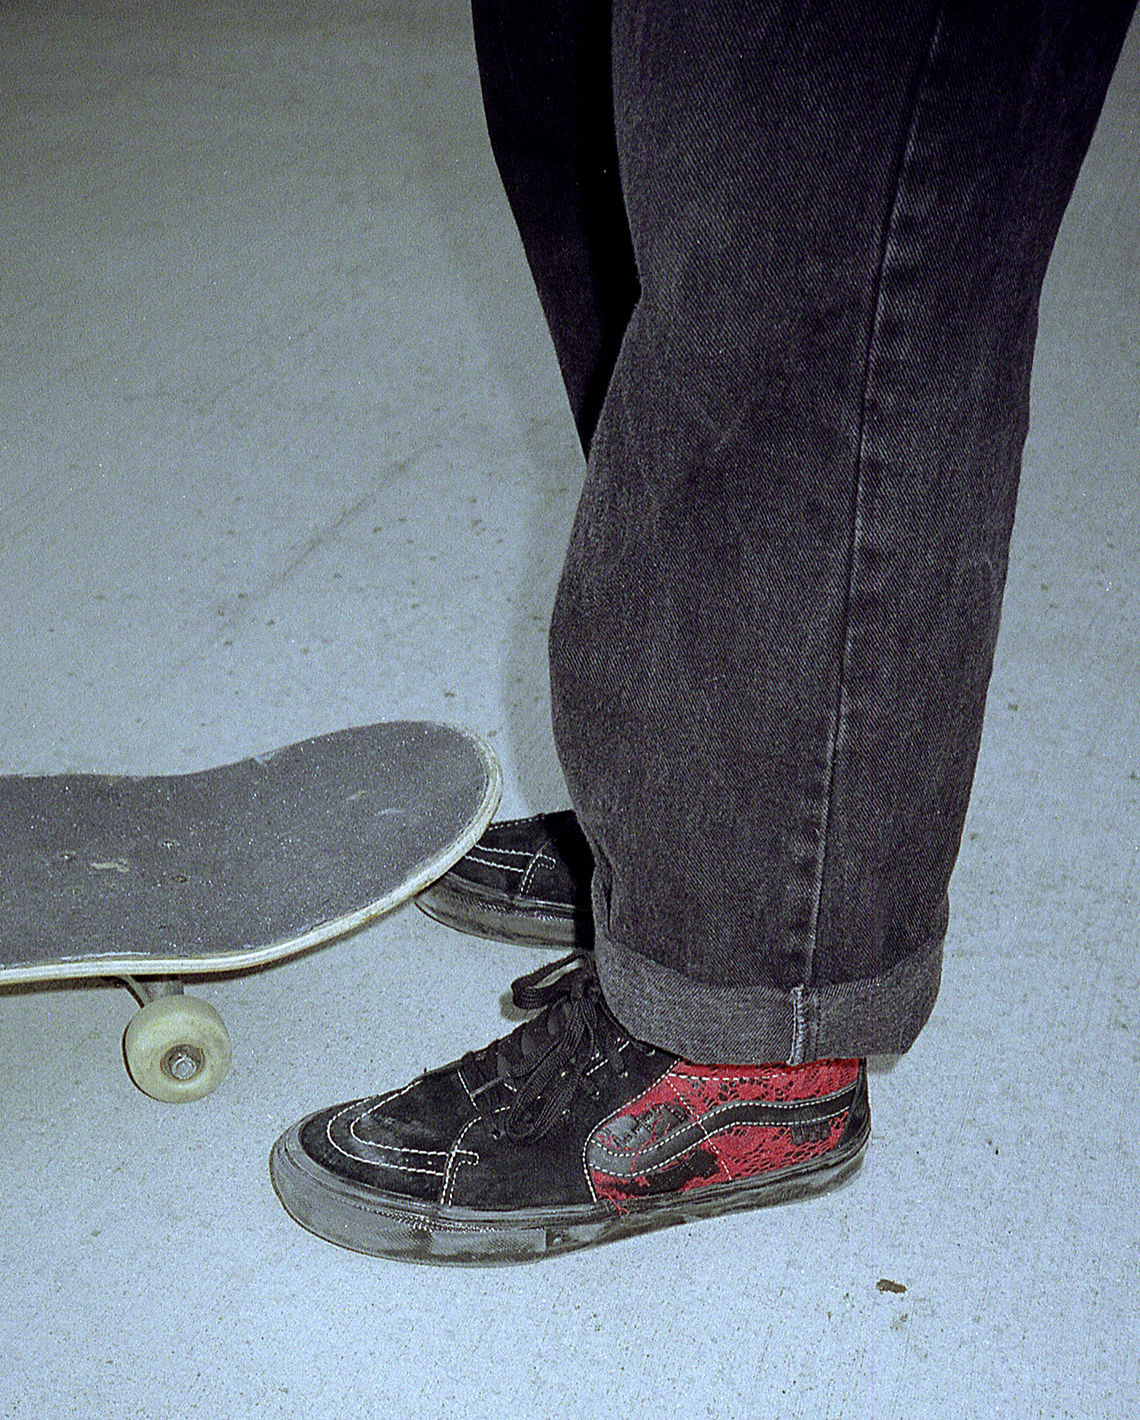 Premier Skate rug vans Old Skool Grosso Mid Release Date 16